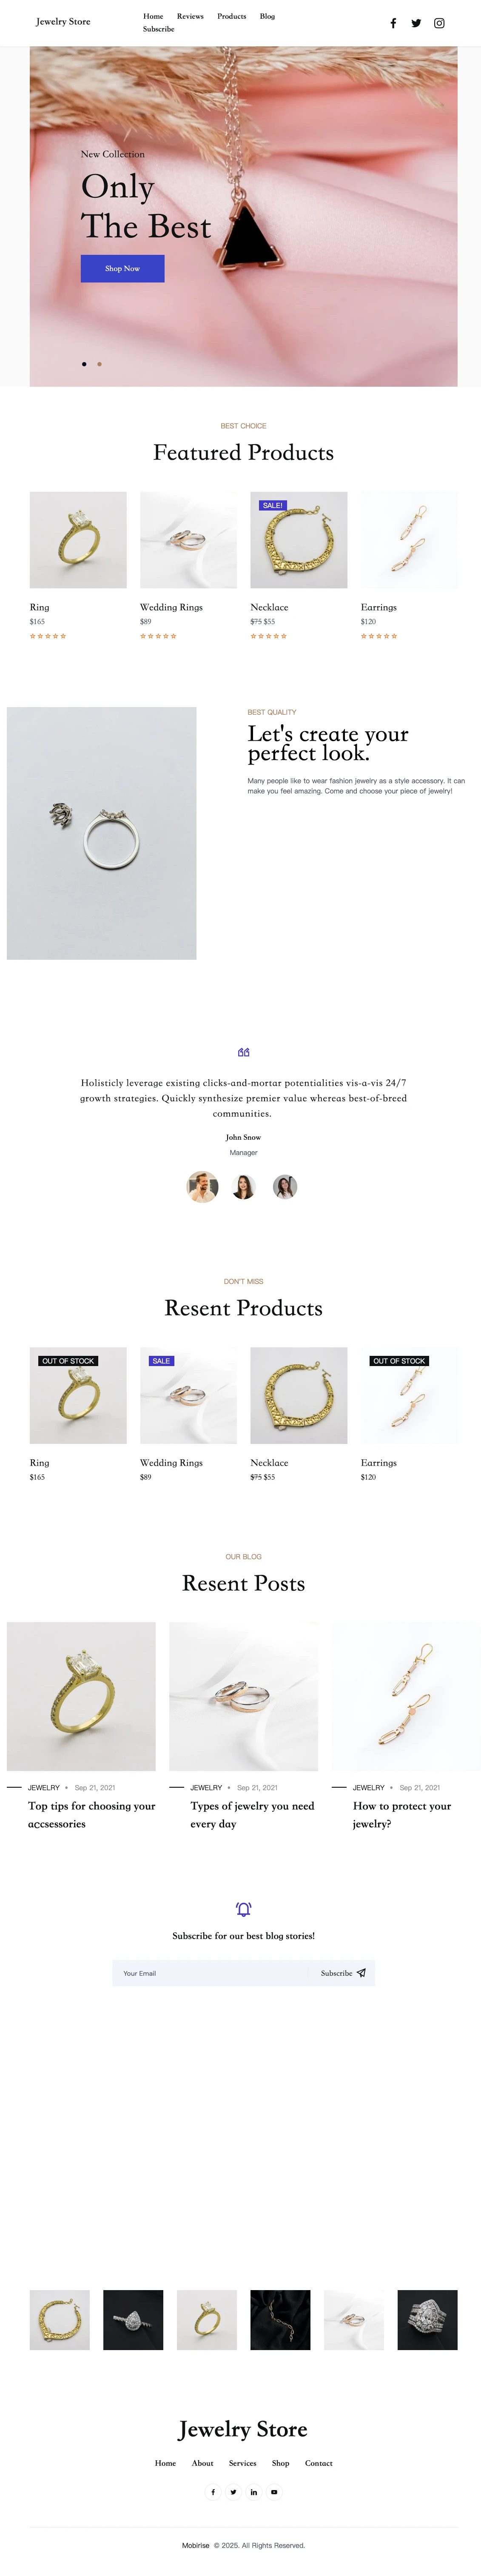 上海某珠宝外贸网站定制制作设计首页页面案例展示